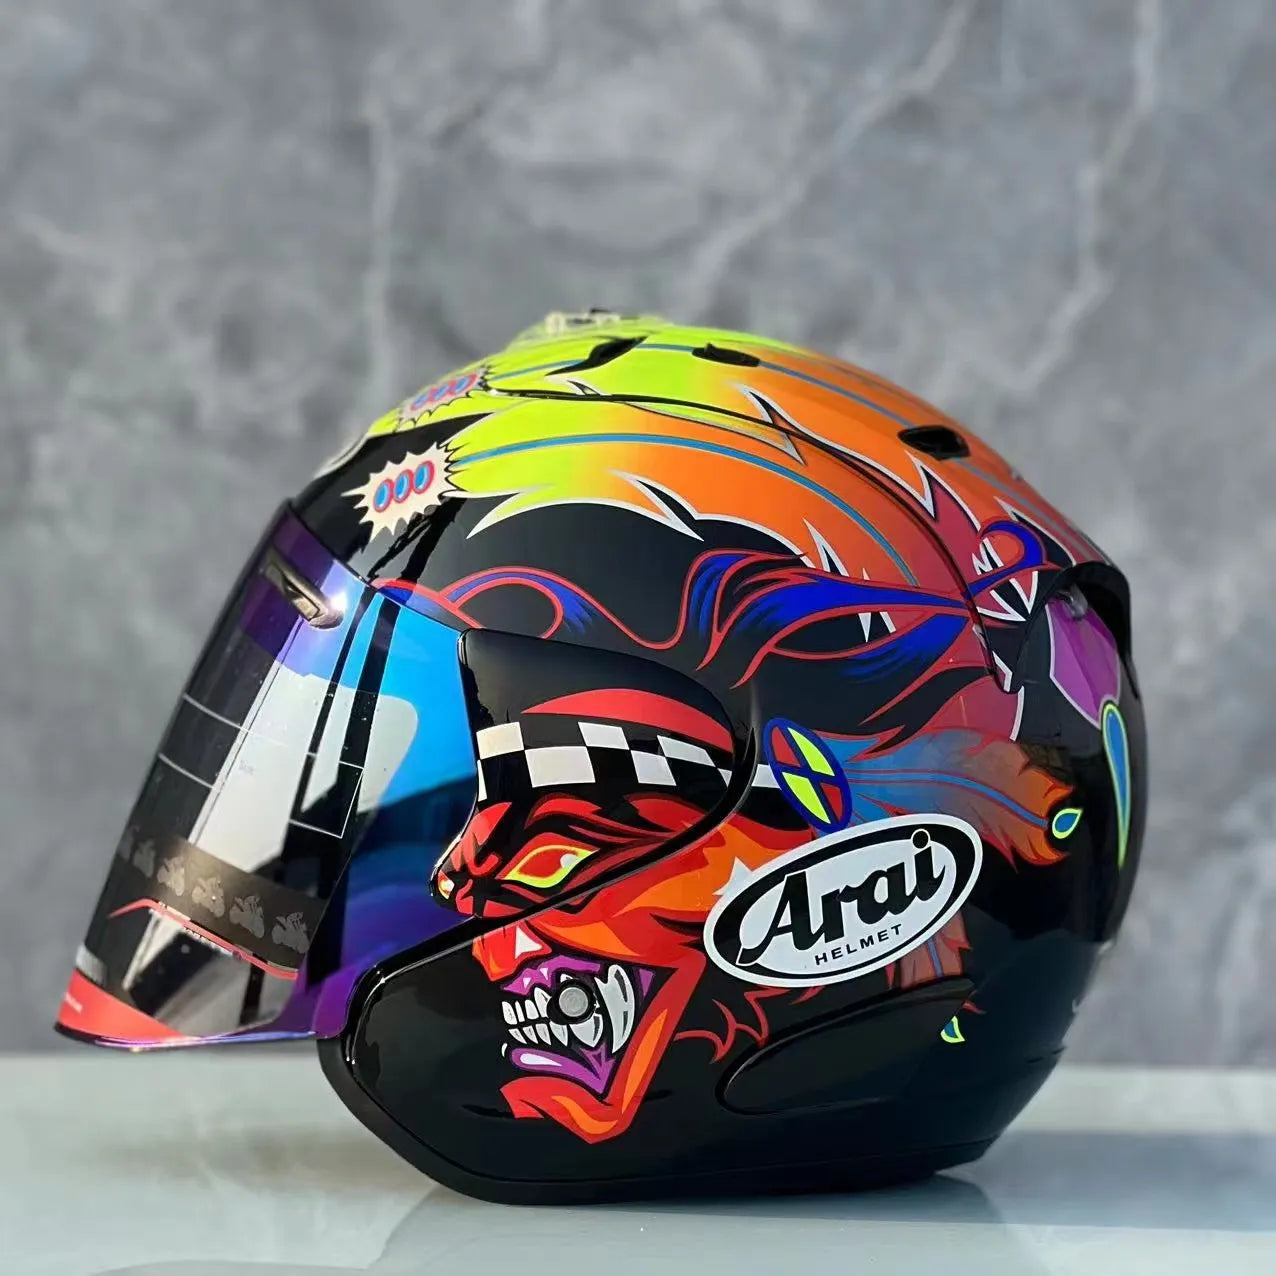 RAM3 Open Face Half Helmet Motorcycle Helmet Riding Motocross Racing Motobike Helmet Capacete New color